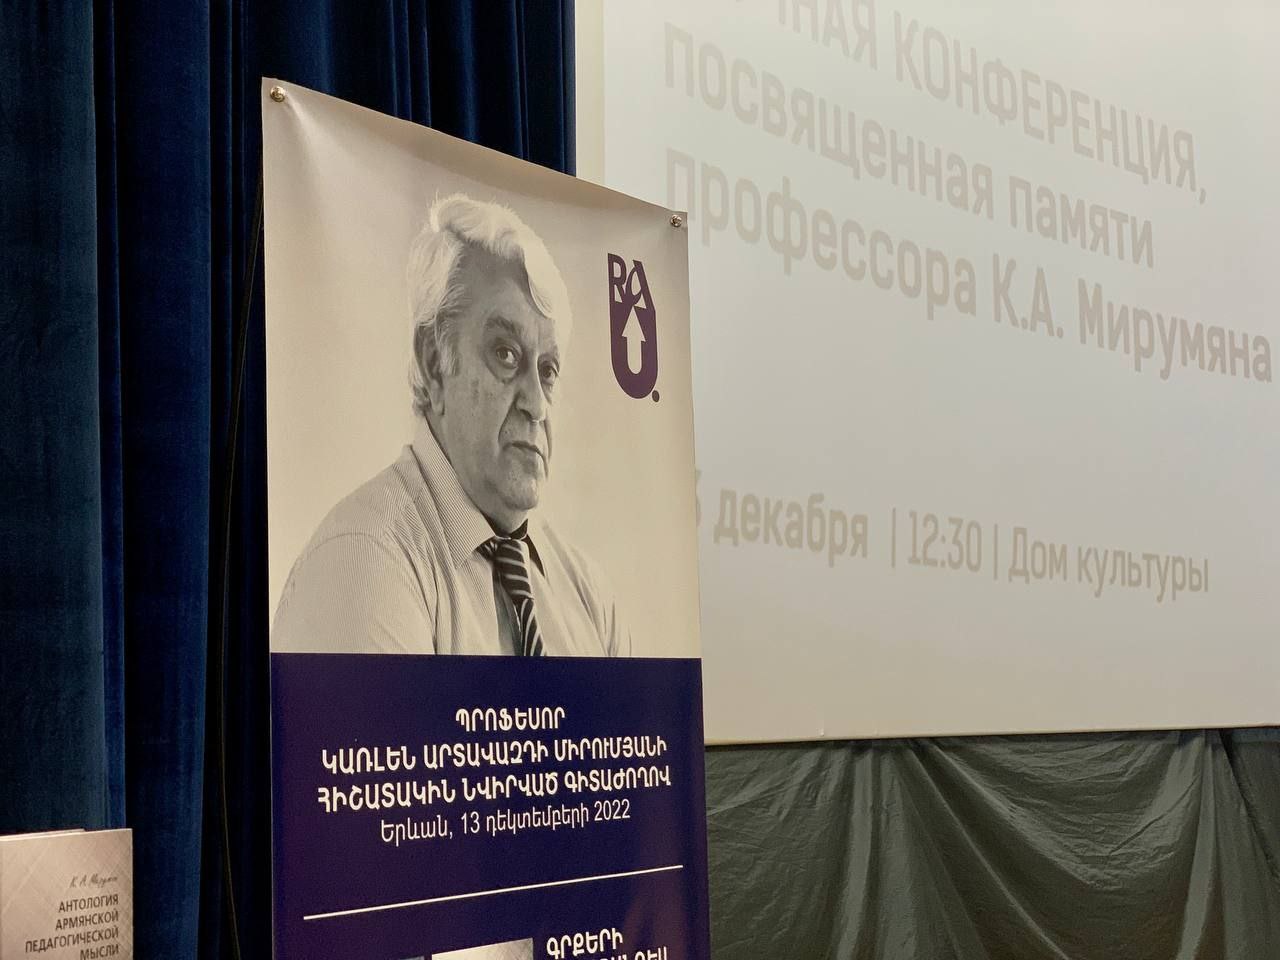 Конференция, посвящённая памяти профессора Карлена Мирумяна